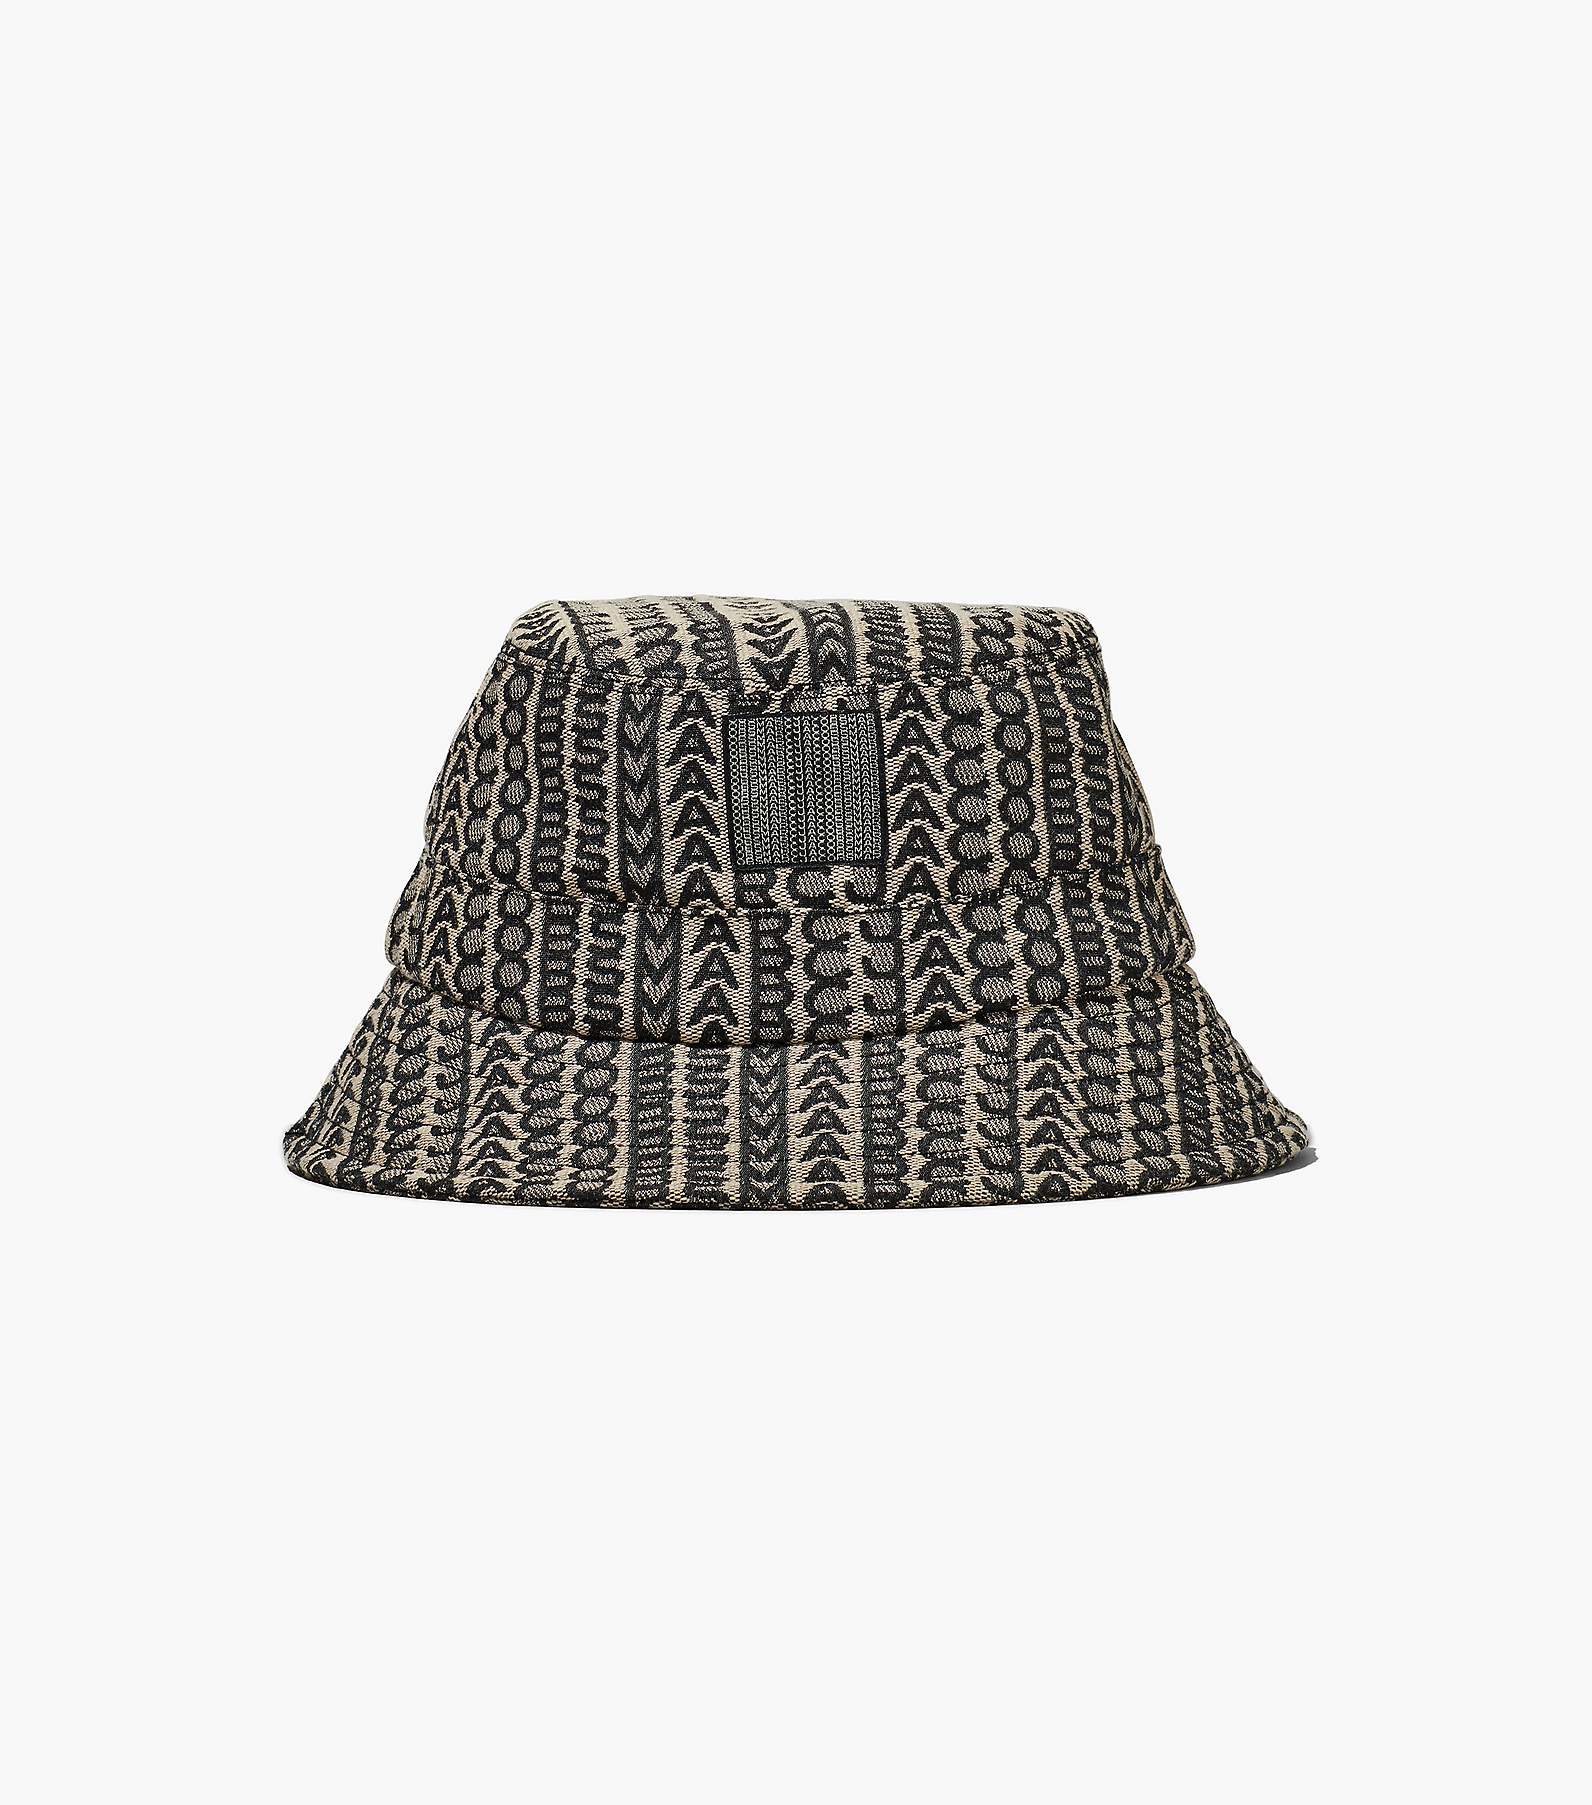 Louis Vuitton Denim Bucket hat, Women's Fashion, Watches